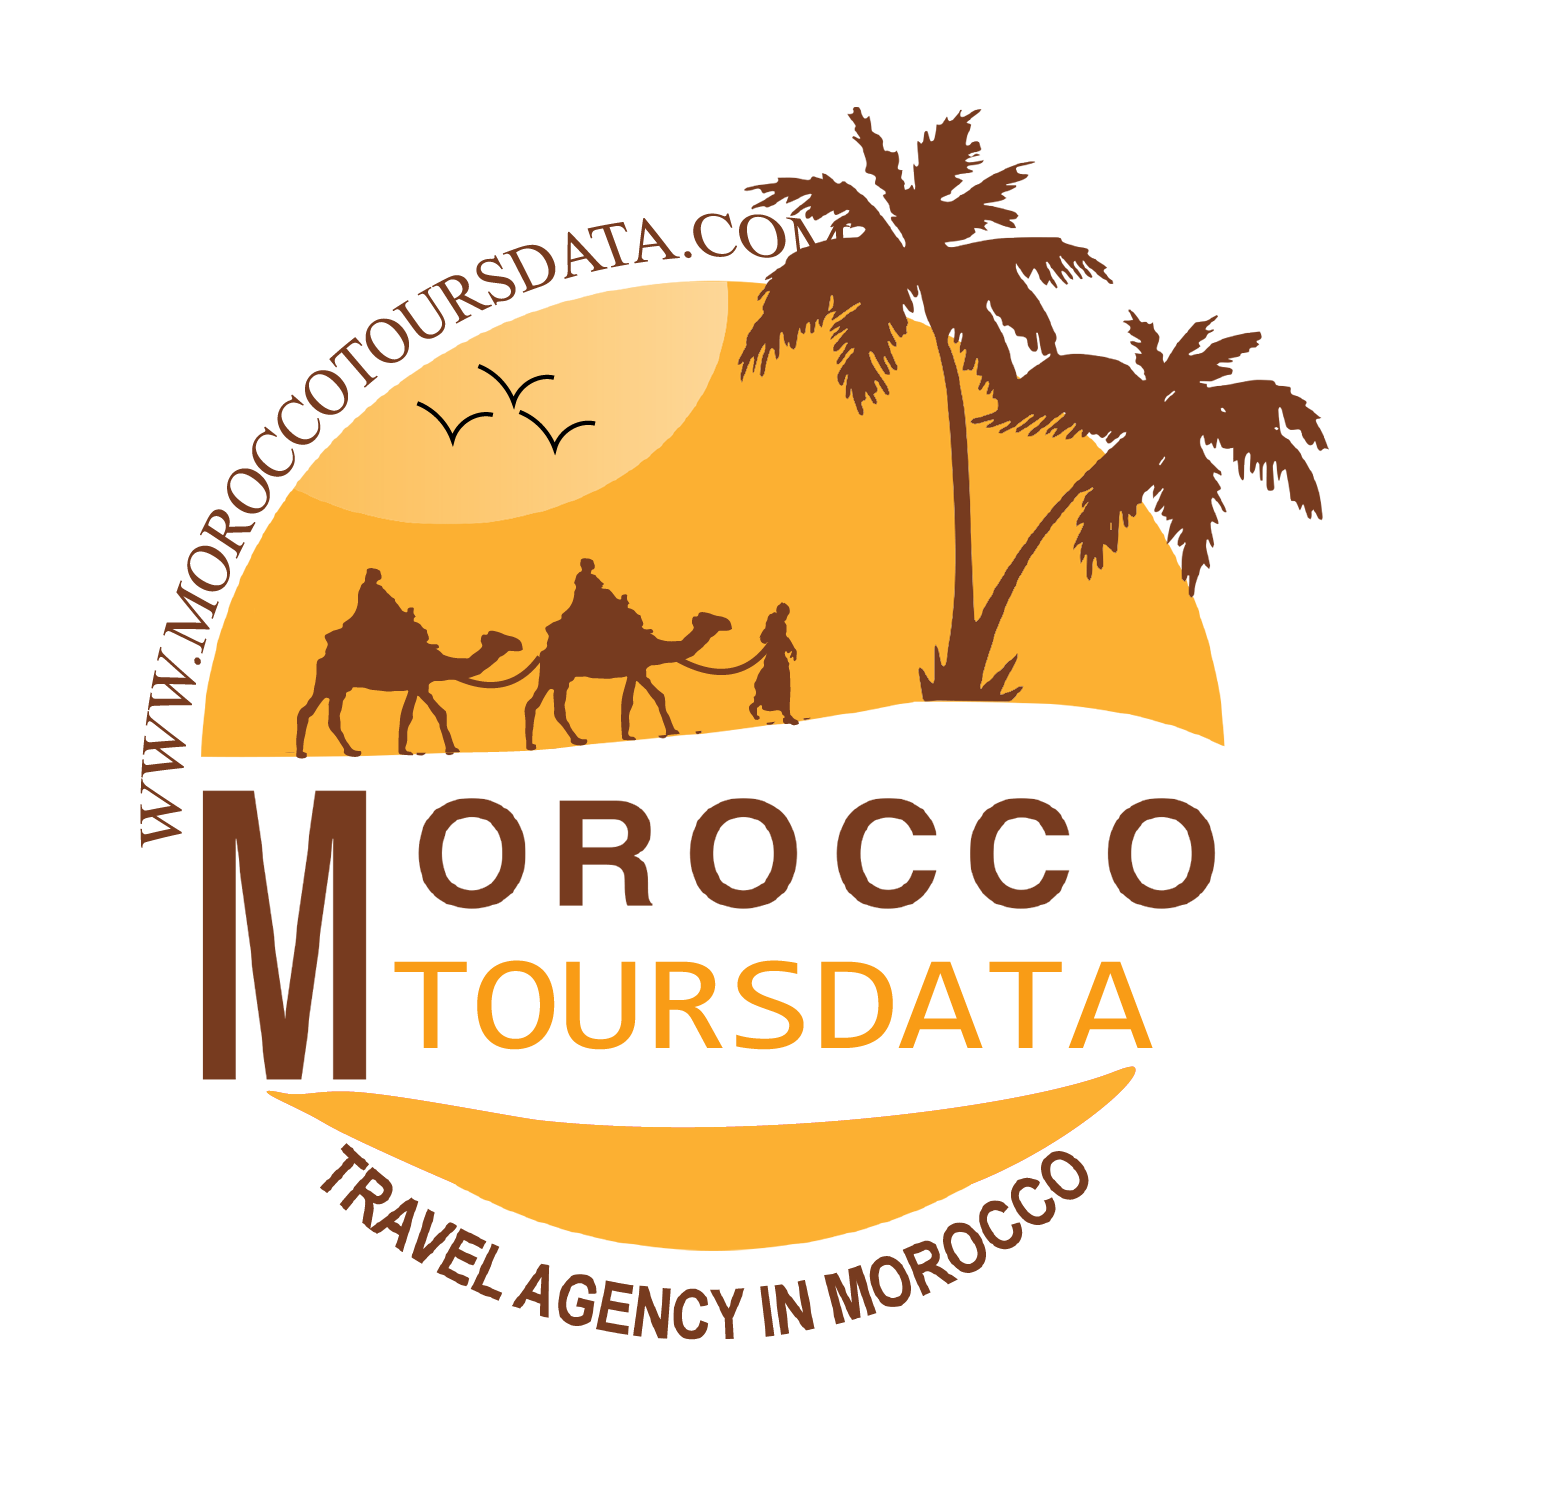 morocco tours data logo